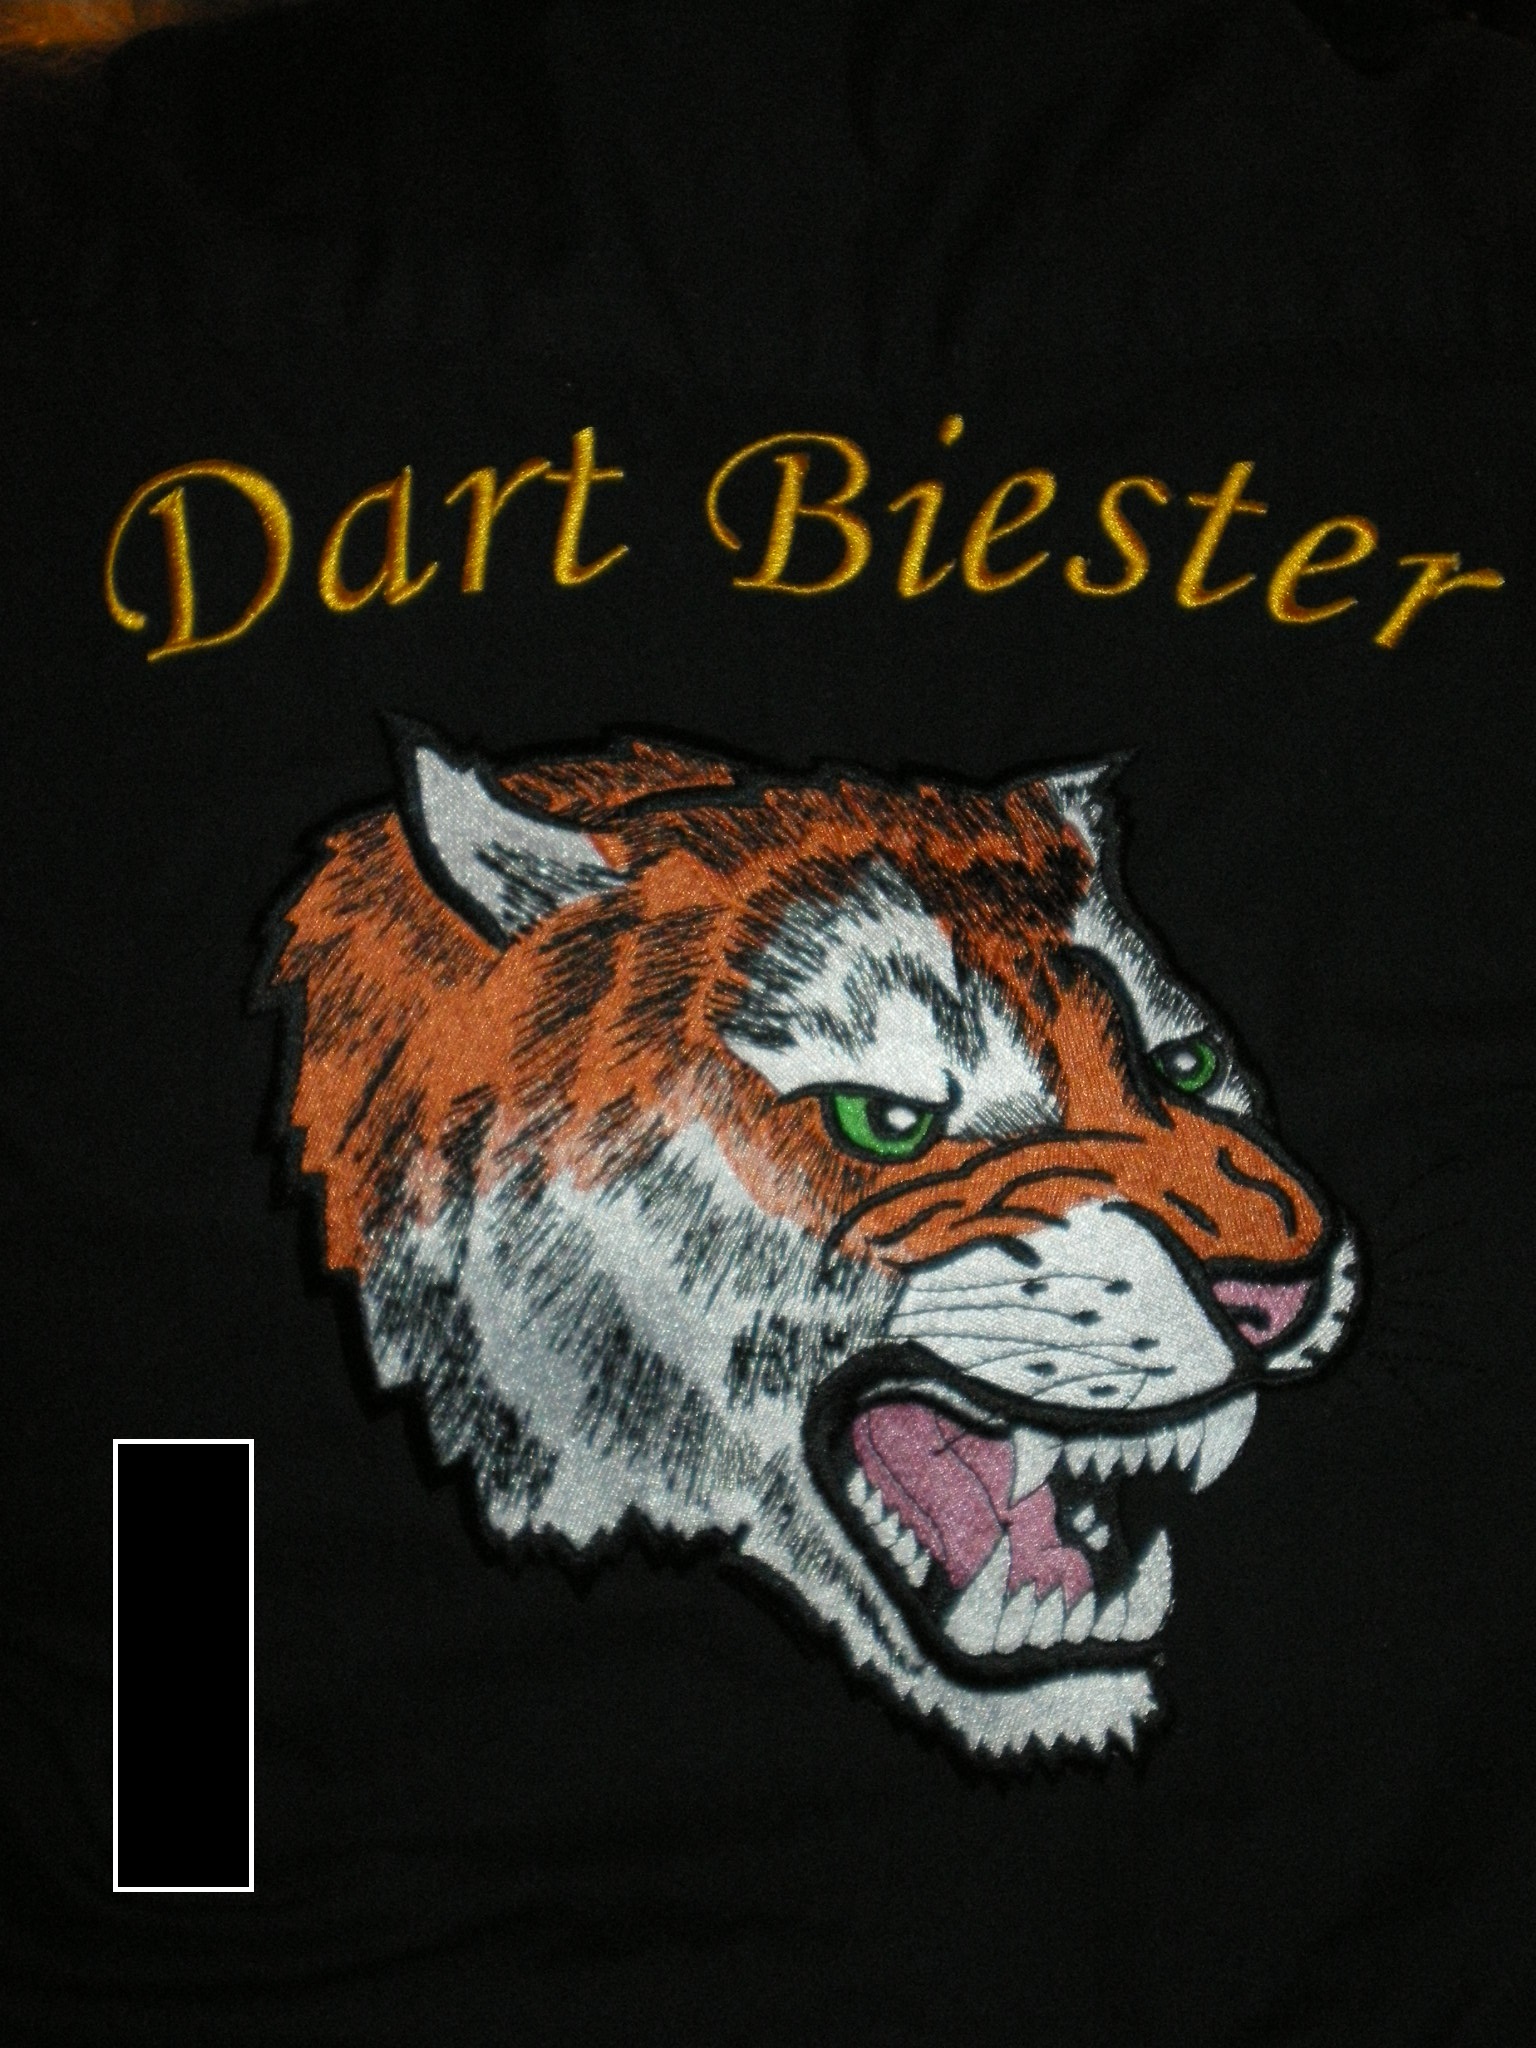 Dartbiester